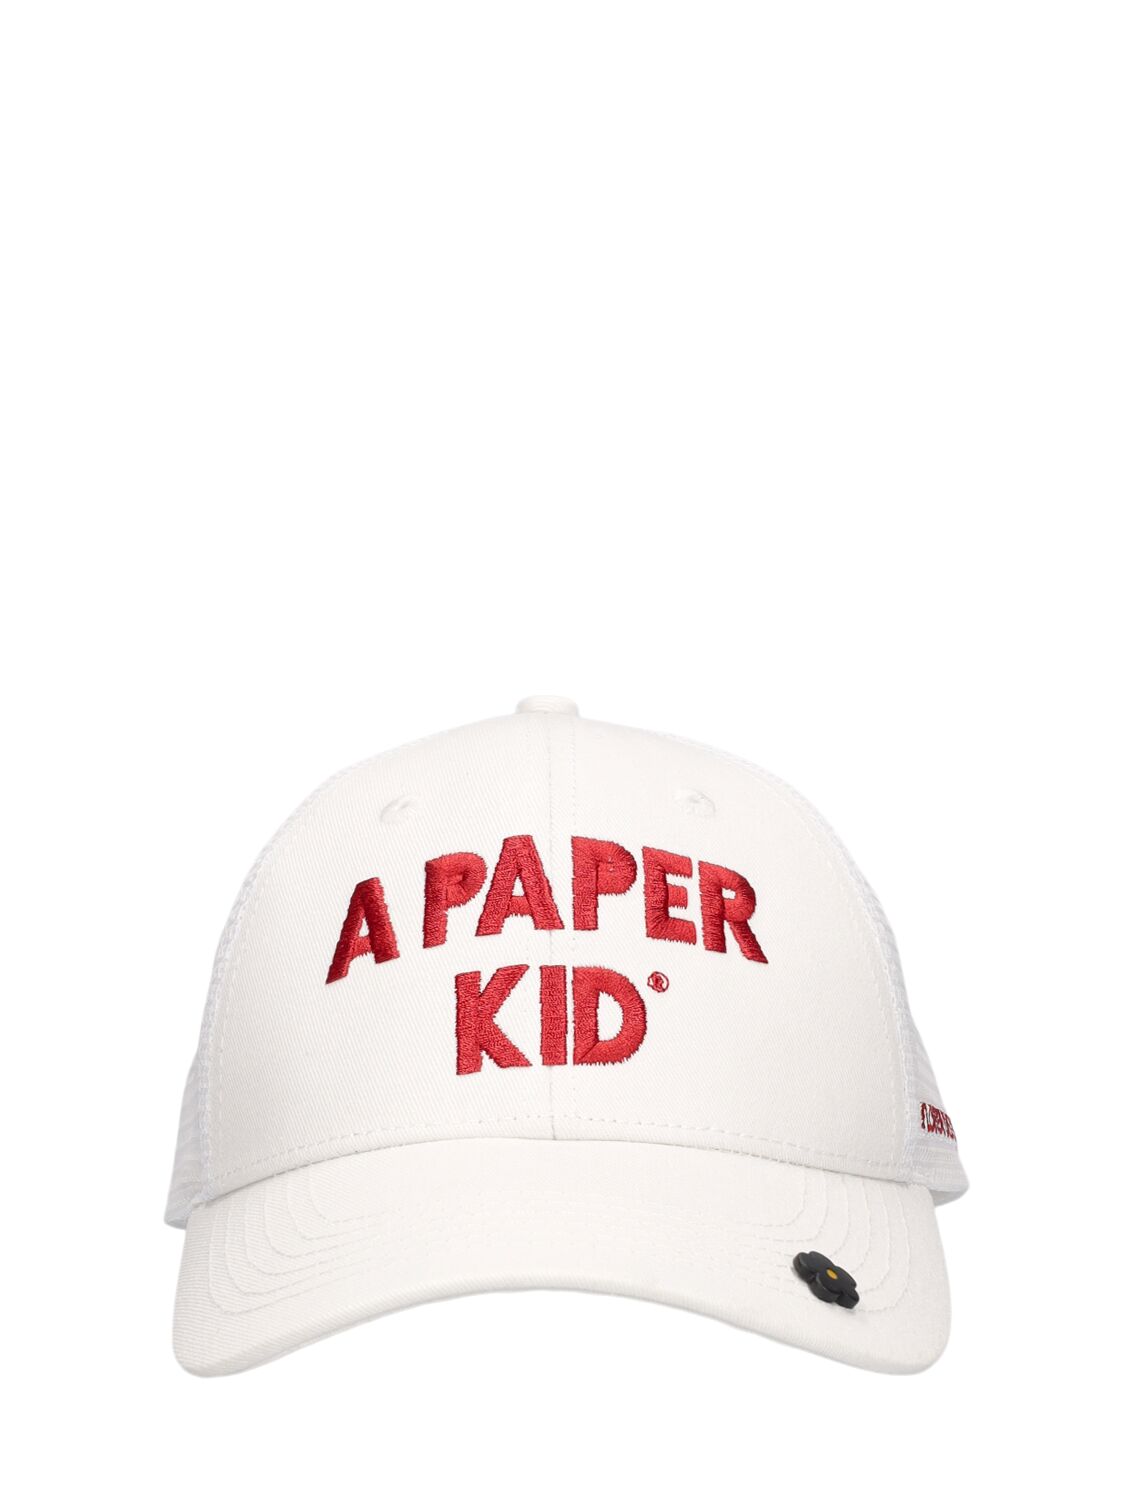 A Paper Kid Unisex Trucker Hat In Crema